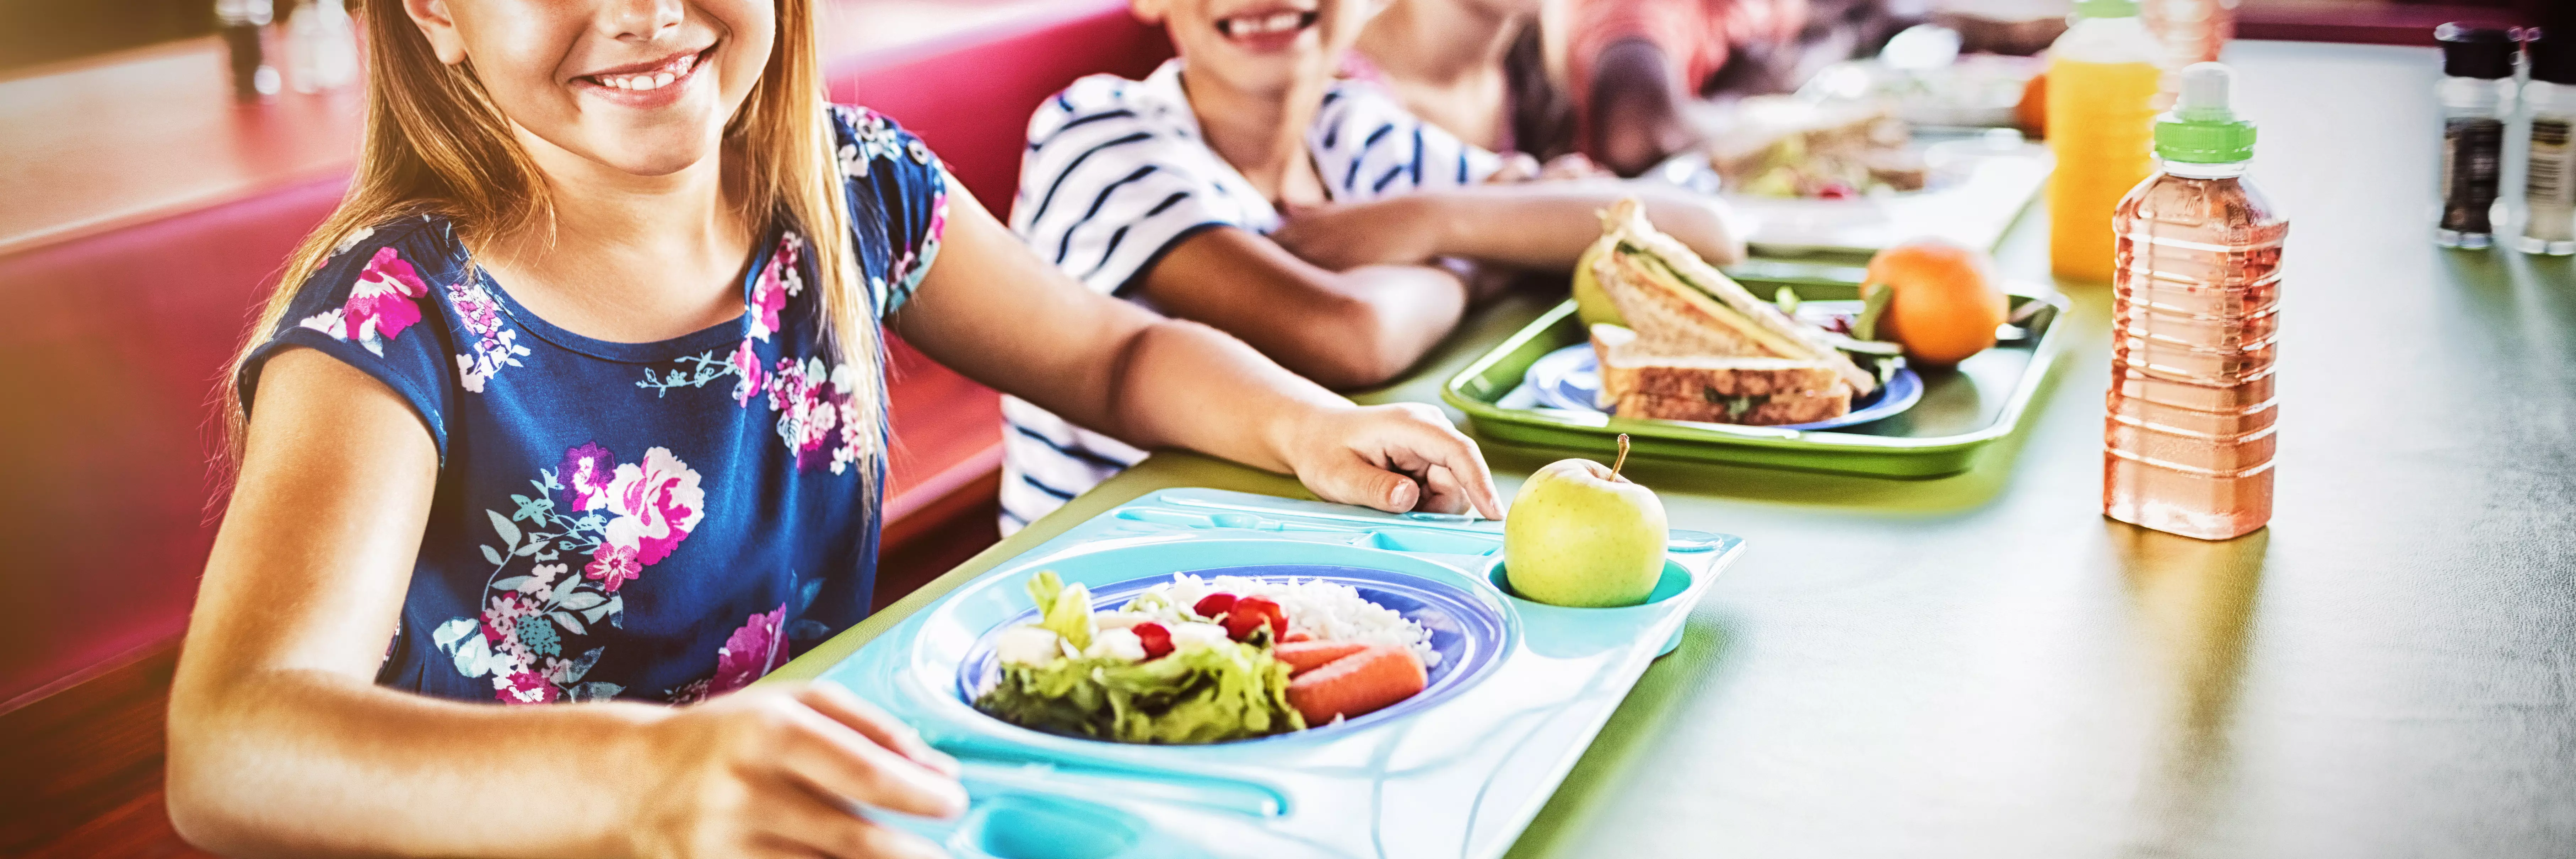 Uśmiechnięte dzieci siedzą przed tacami z jedzeniem.